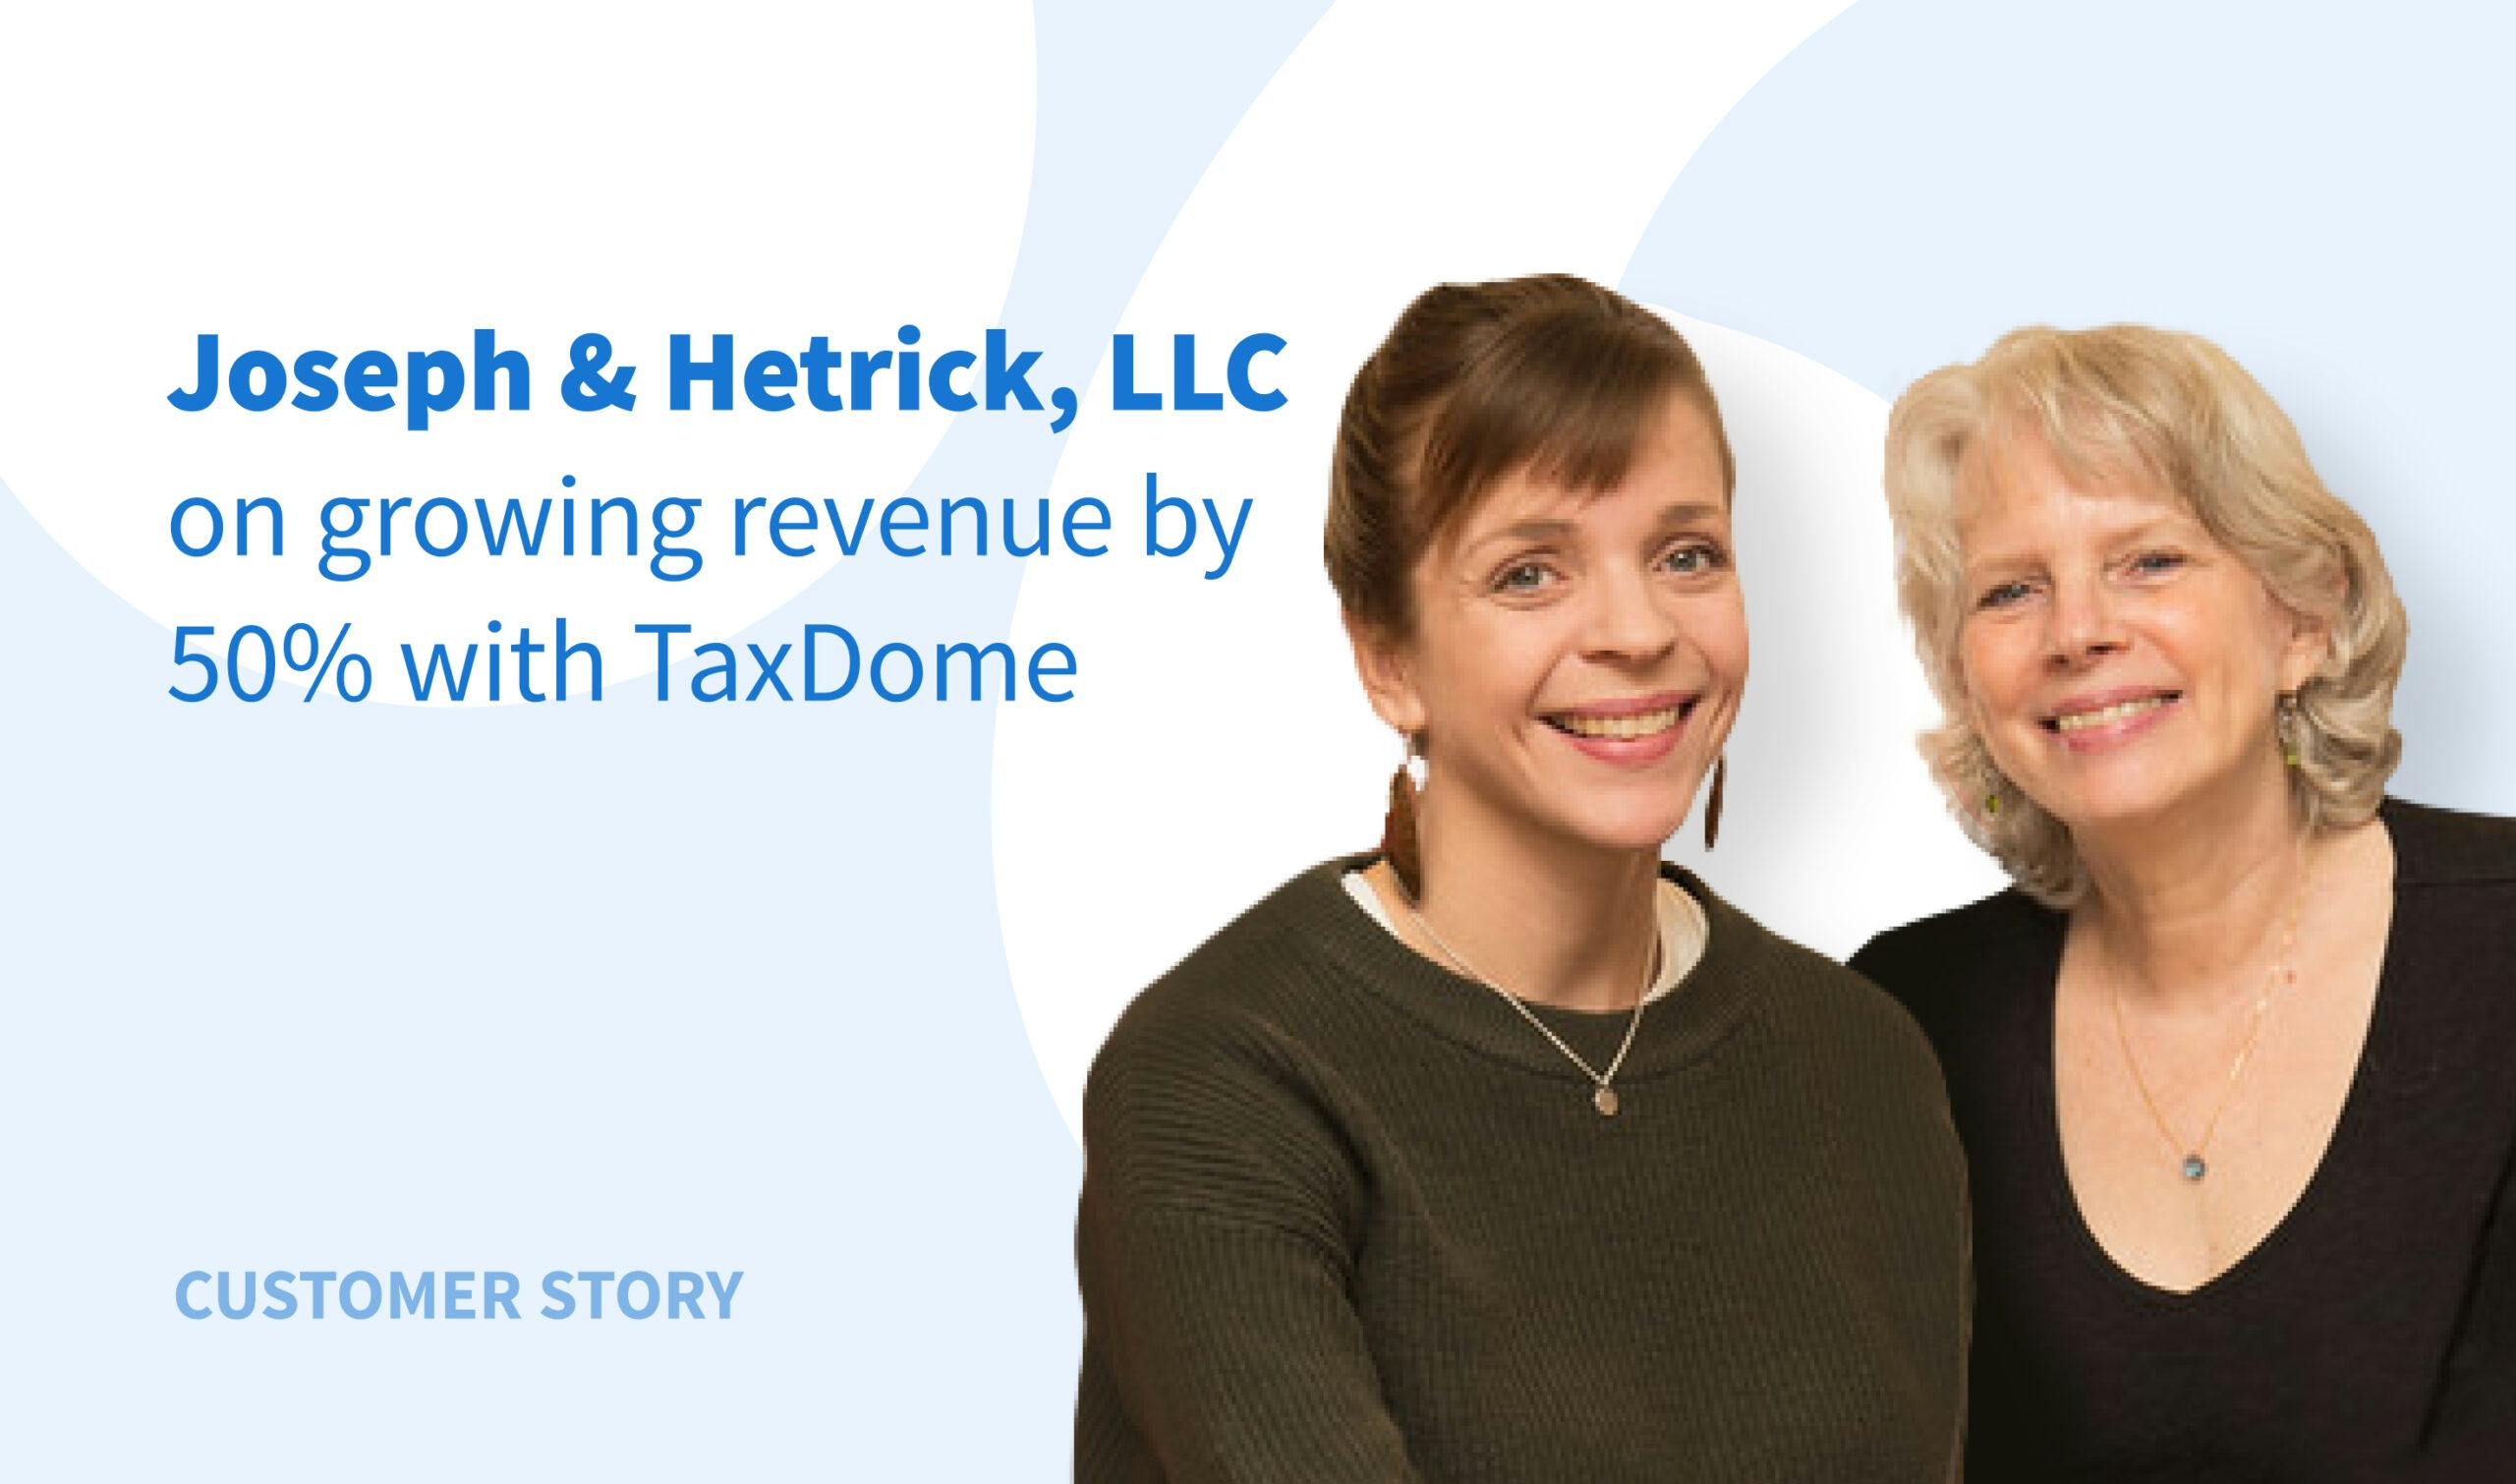 La experiencia de Joseph & Hetrick: Aumentar los ingresos un 50% con TaxDome